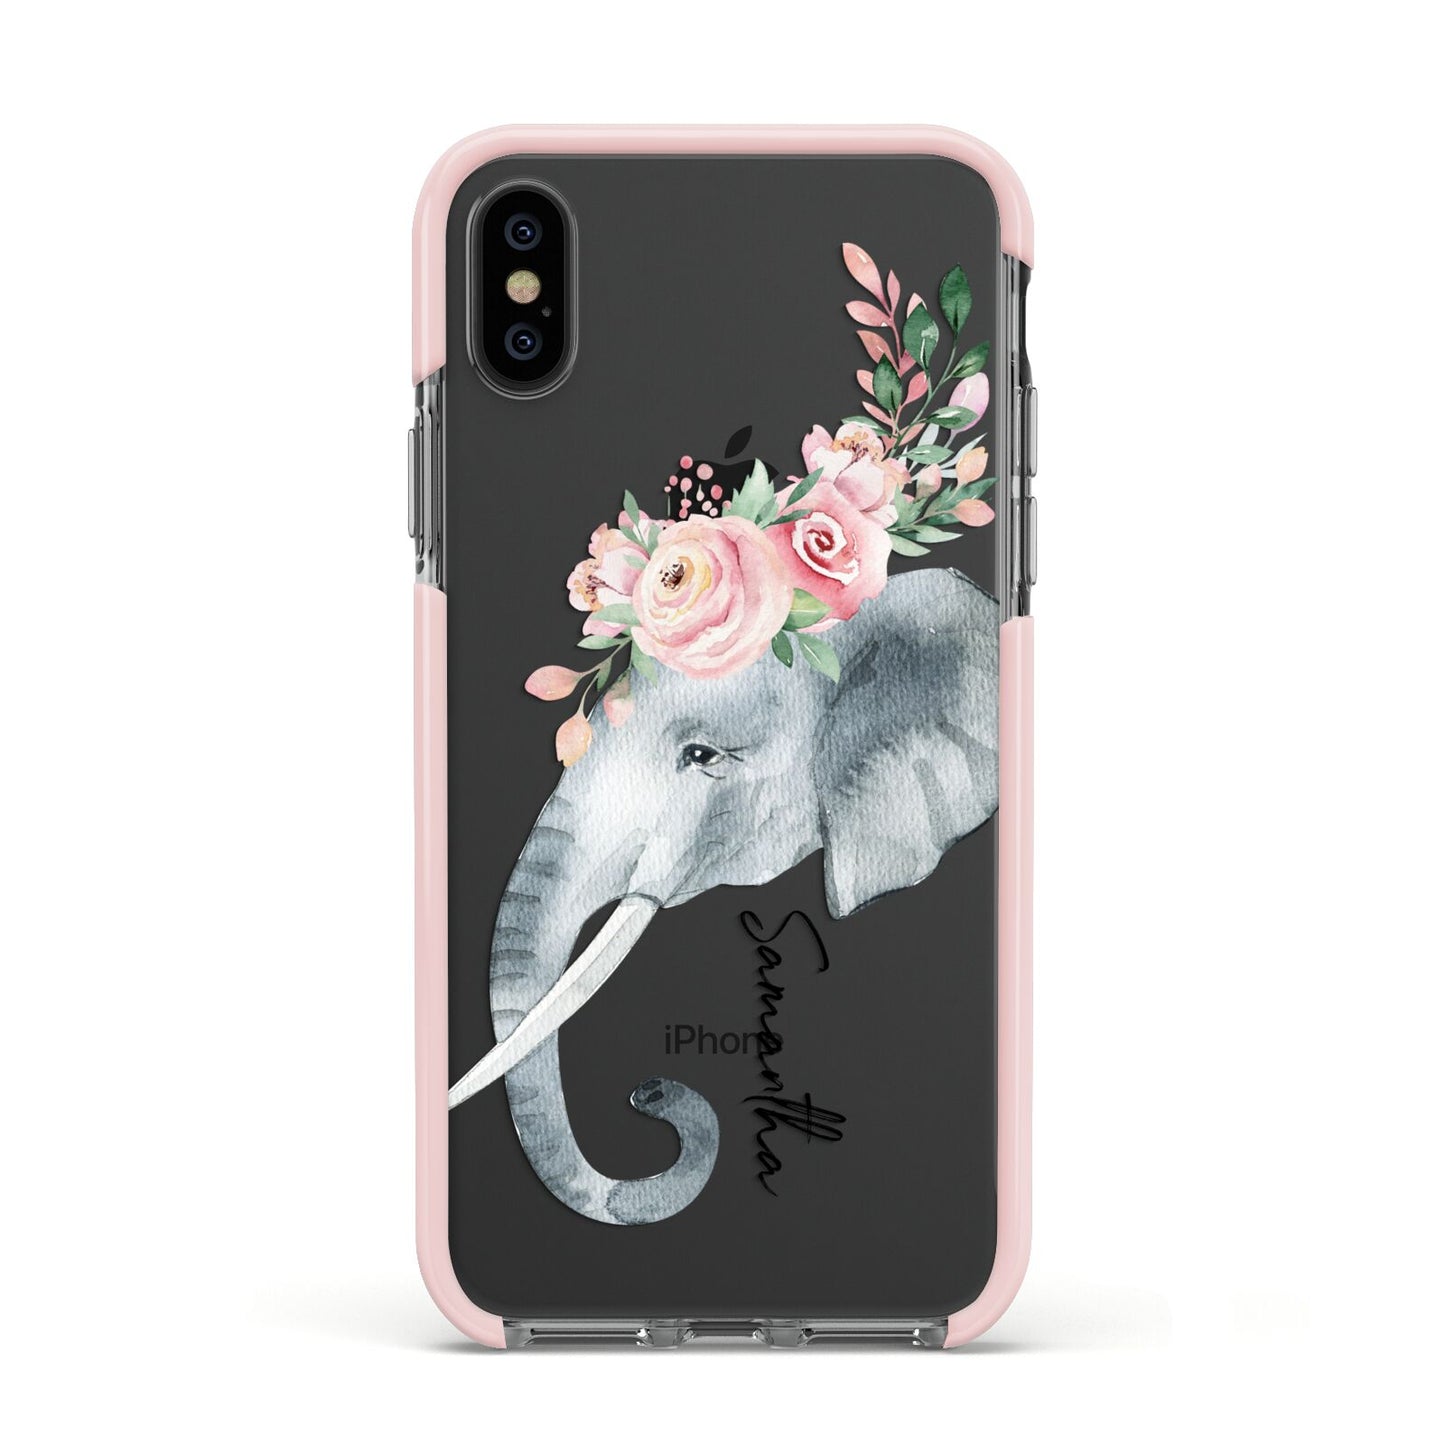 Personalised Elephant Apple iPhone Xs Impact Case Pink Edge on Black Phone